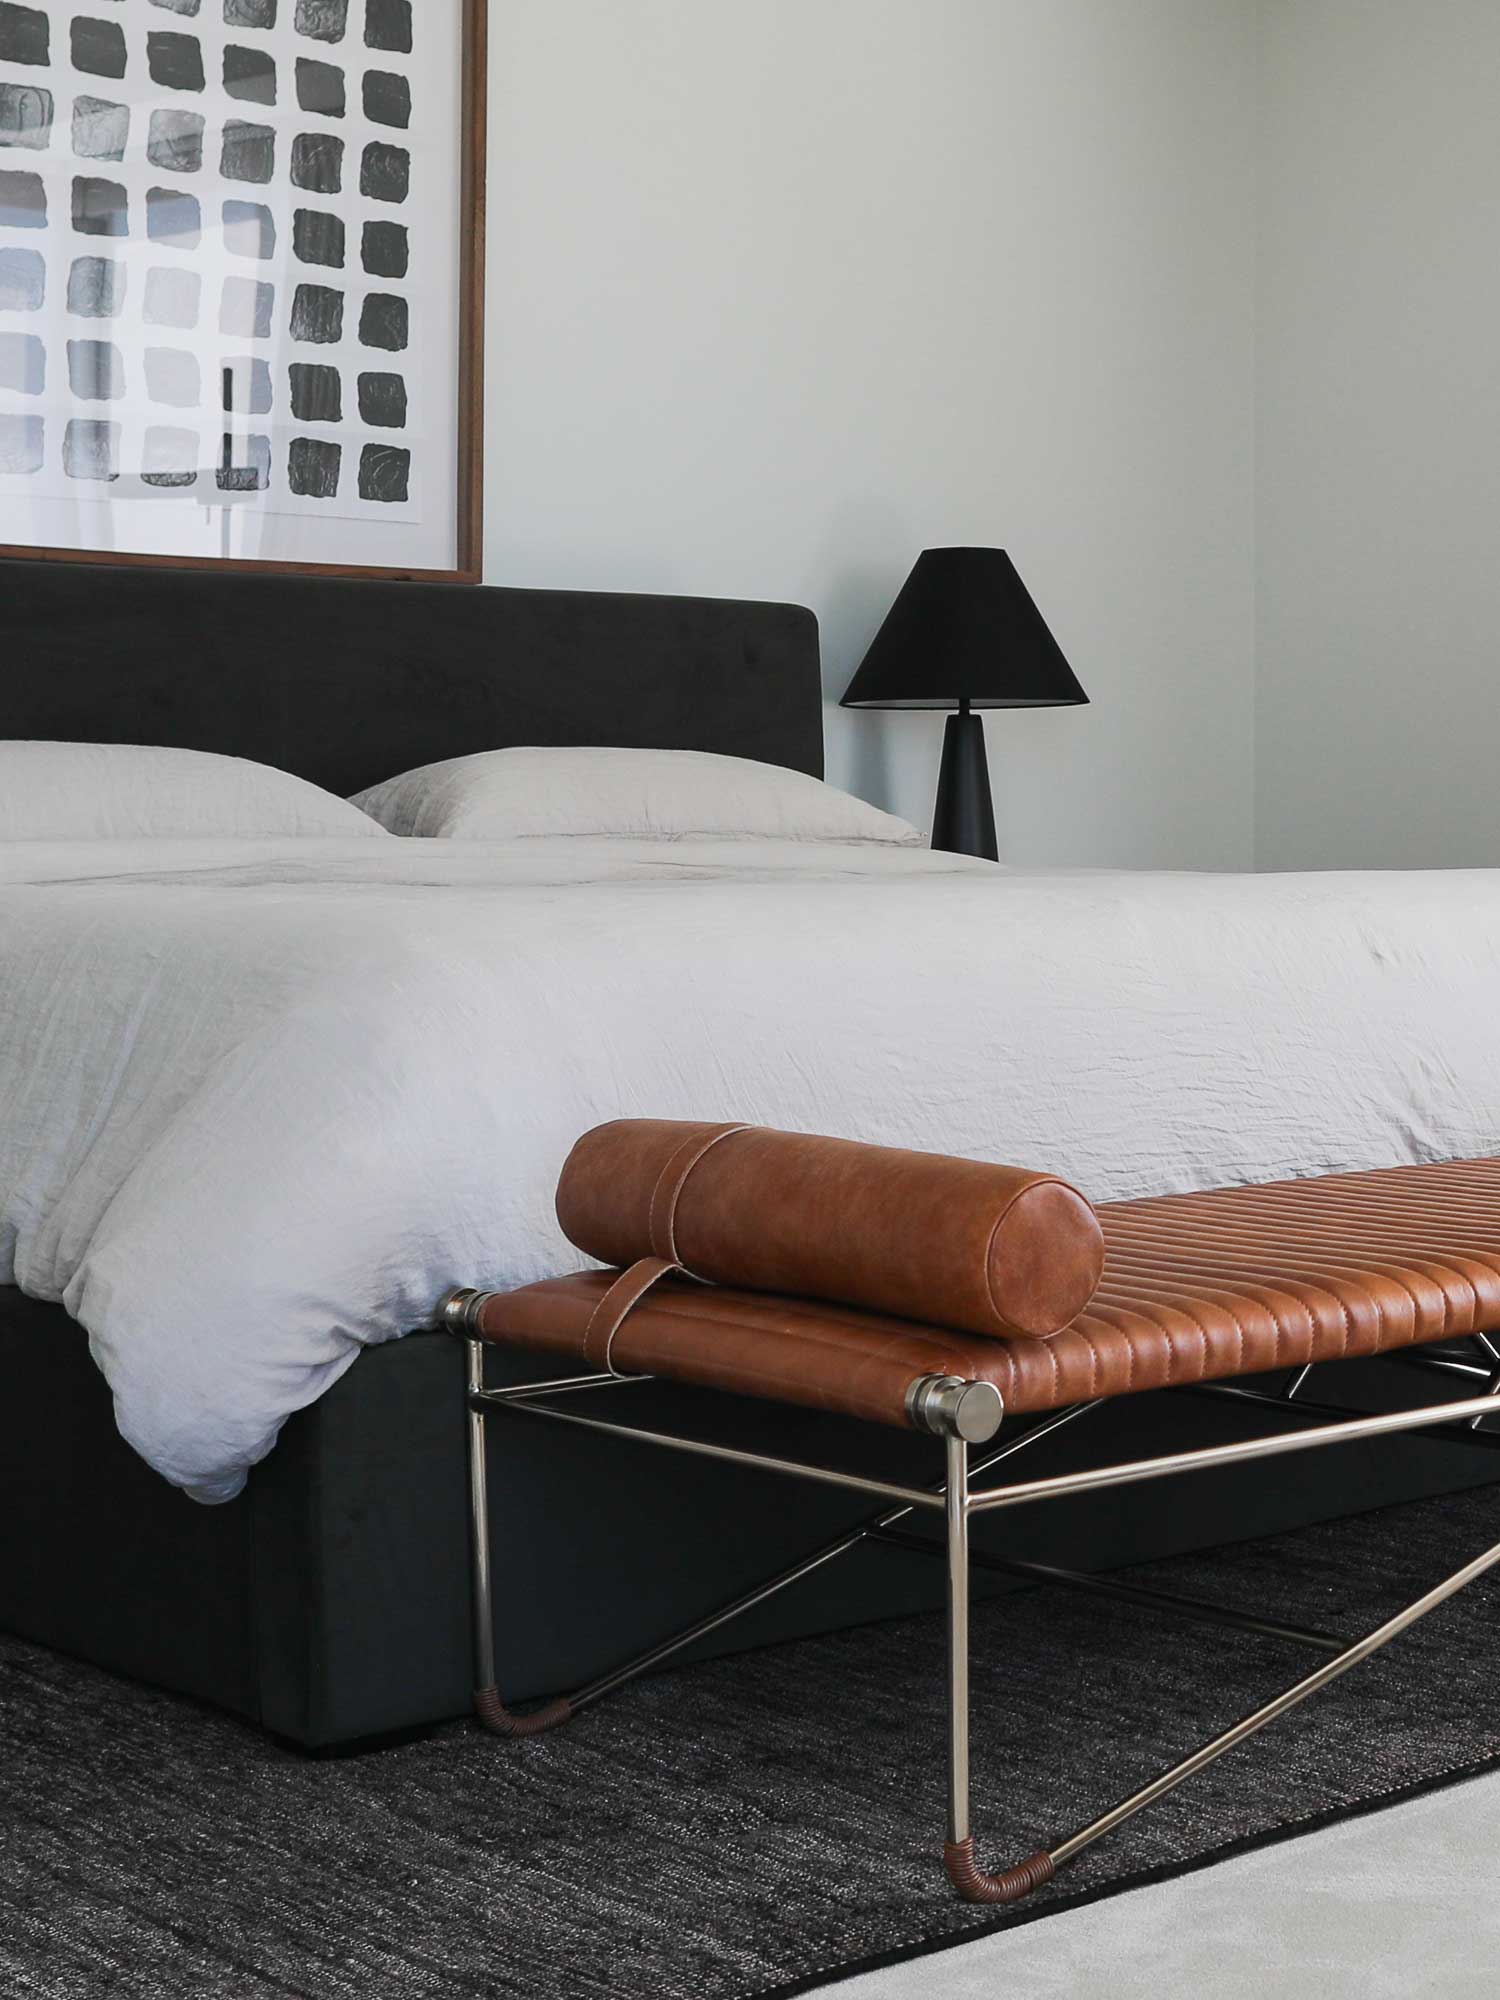 Bedroom design by interior designer Patchi Cancado in Virginia Beach